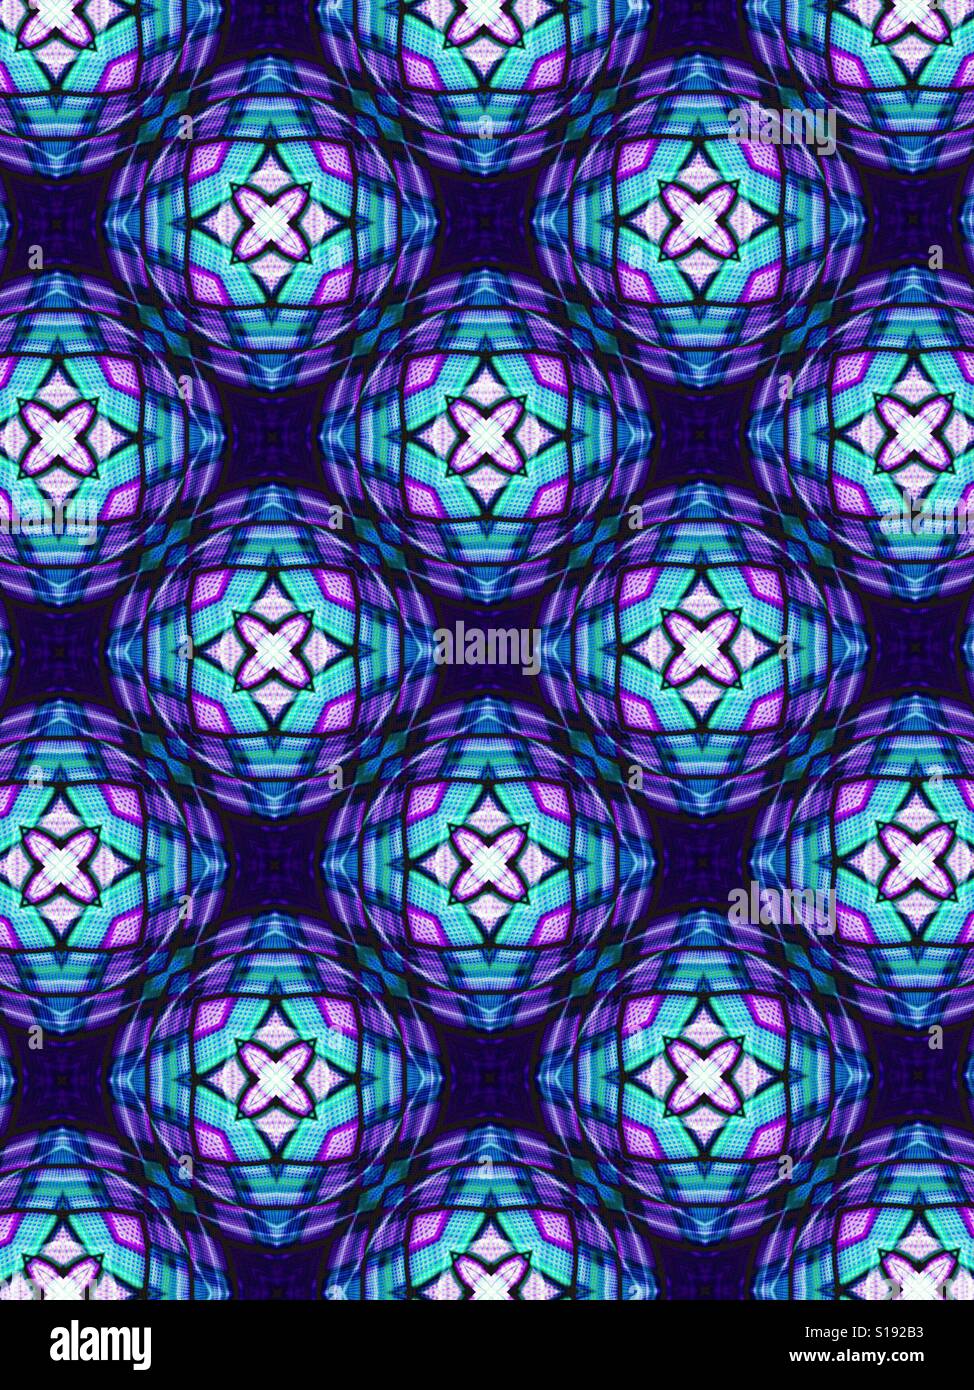 Un modello astratto di cerchi luminosi con stelle al centro utilizzando i colori viola e blu Foto Stock